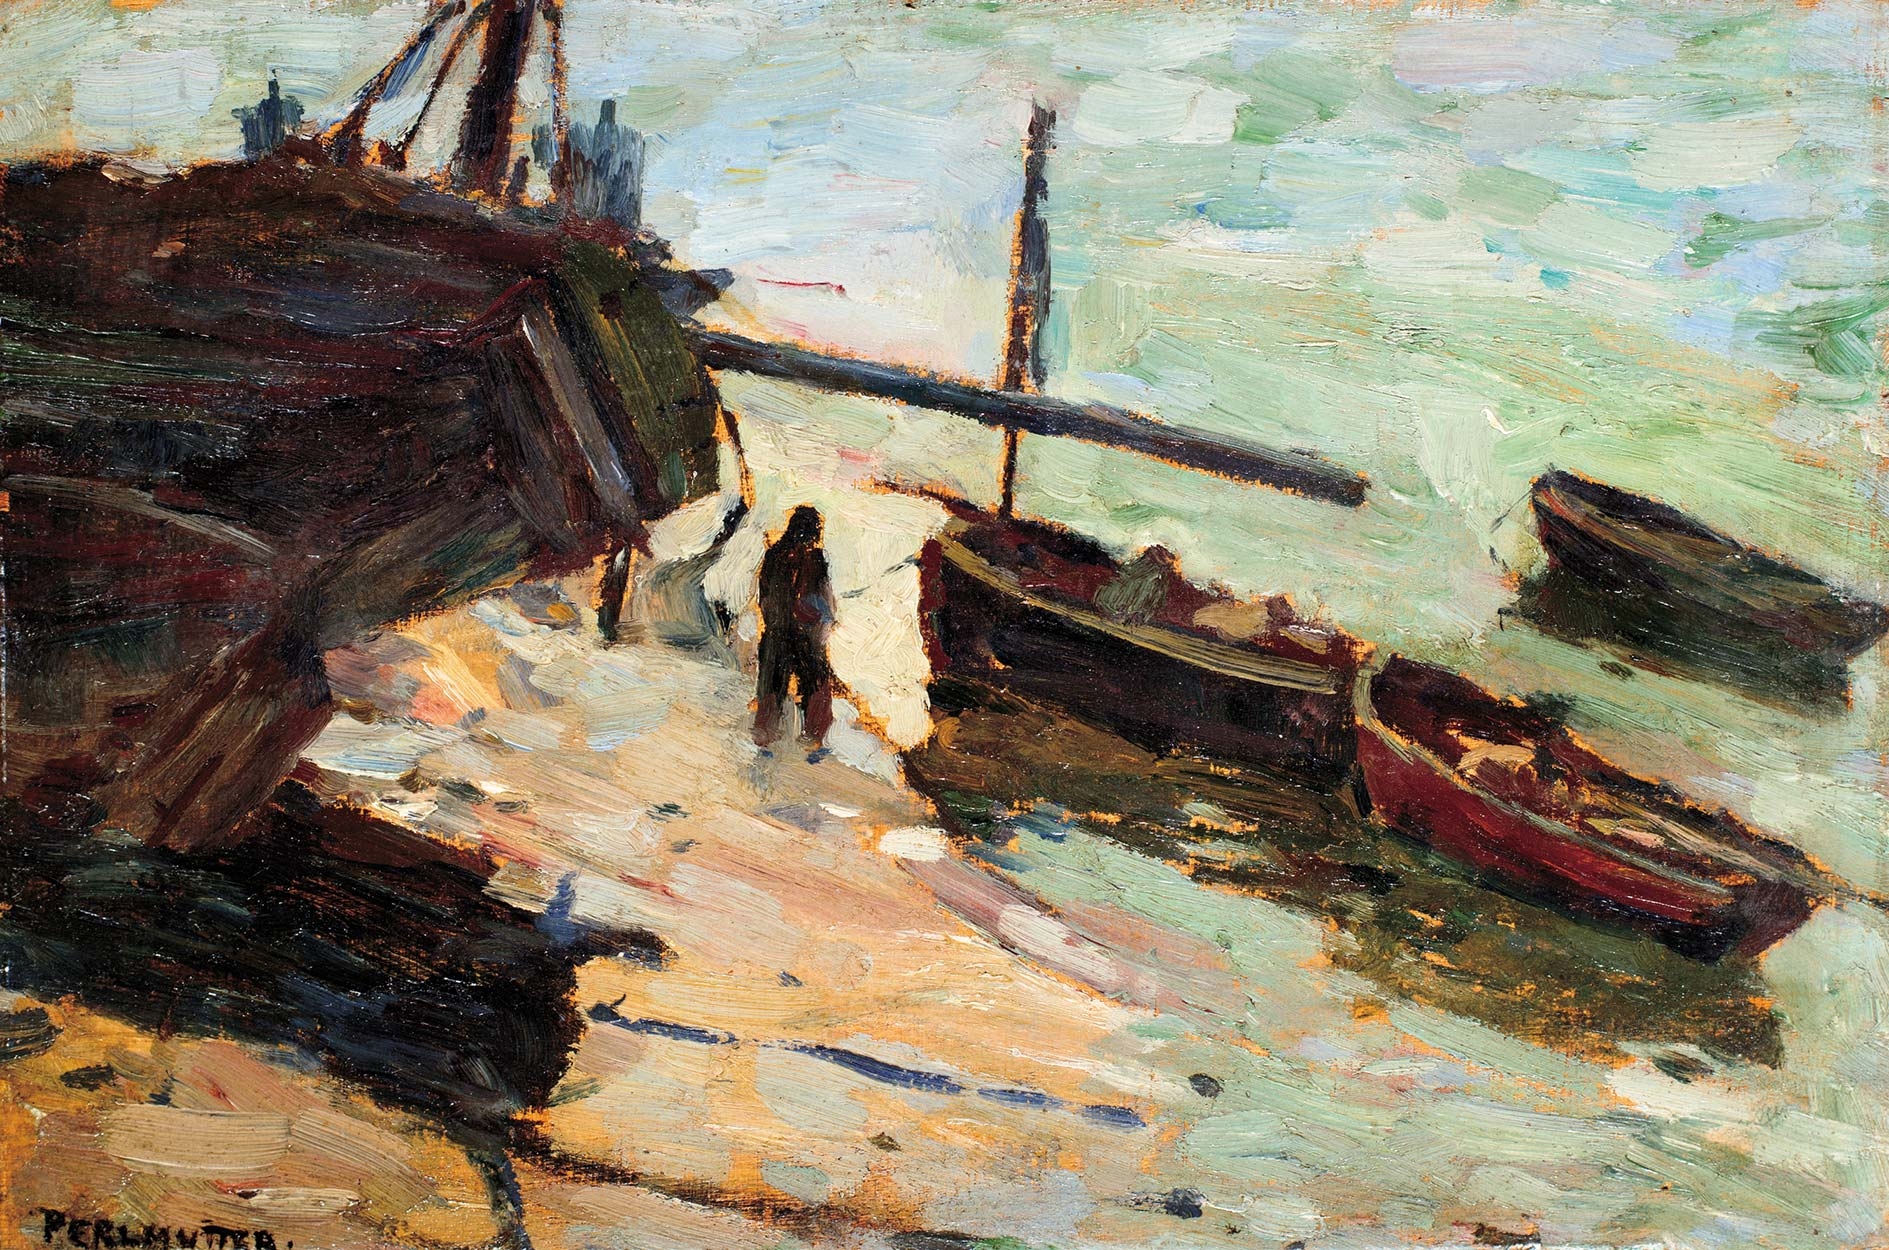 Perlmutter Izsák (1866-1932) Csónakok között, 1898